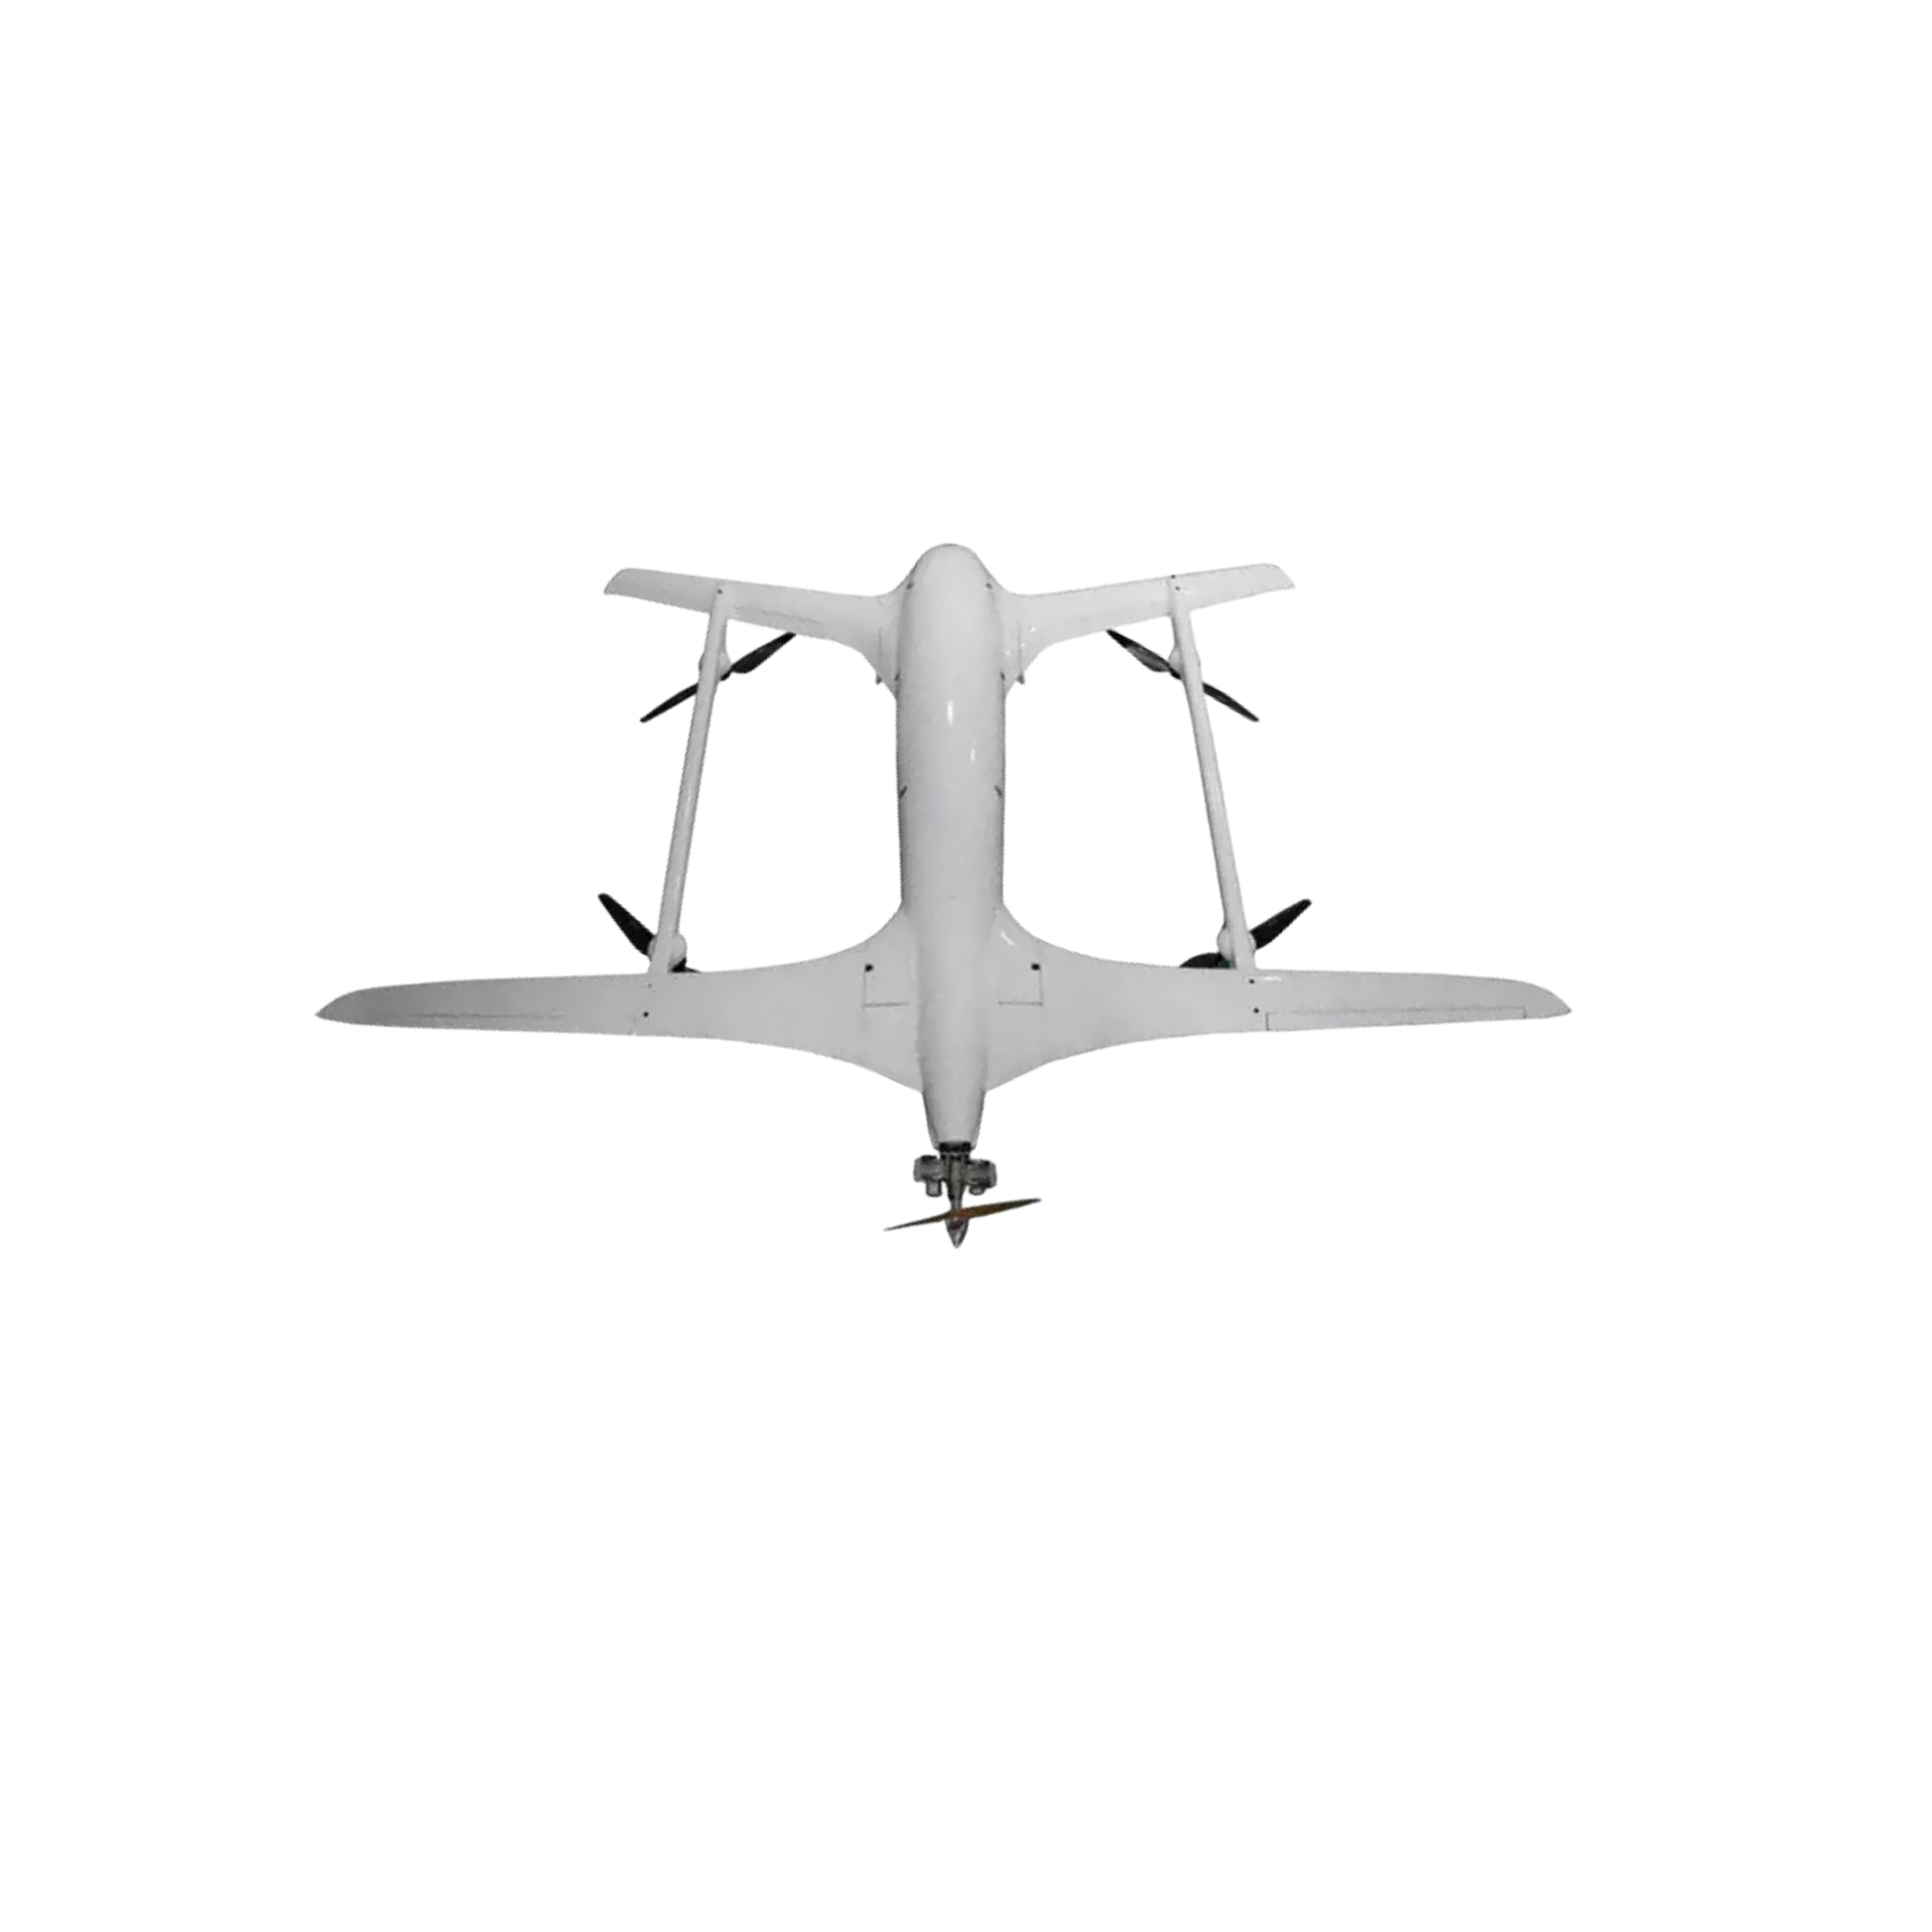 BH4300 Hybrid VTOL UAV- 20kg Mission Payload 8 Hours Endurance - Unmanned RC